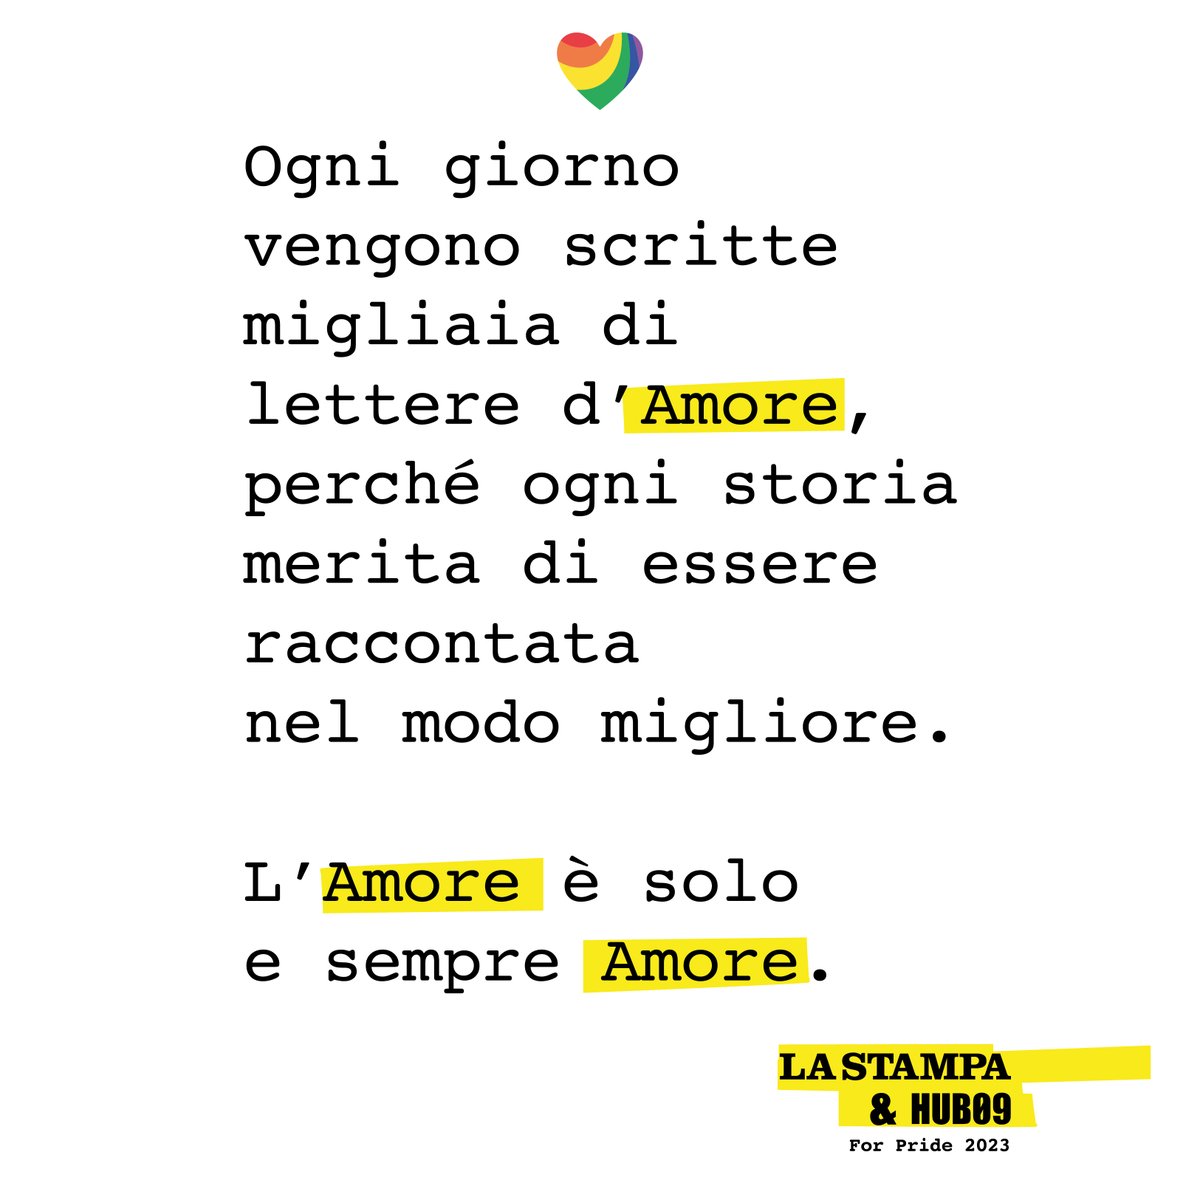 L'Amore è solo e sempre Amore❤️
#TorinoPride #Pride